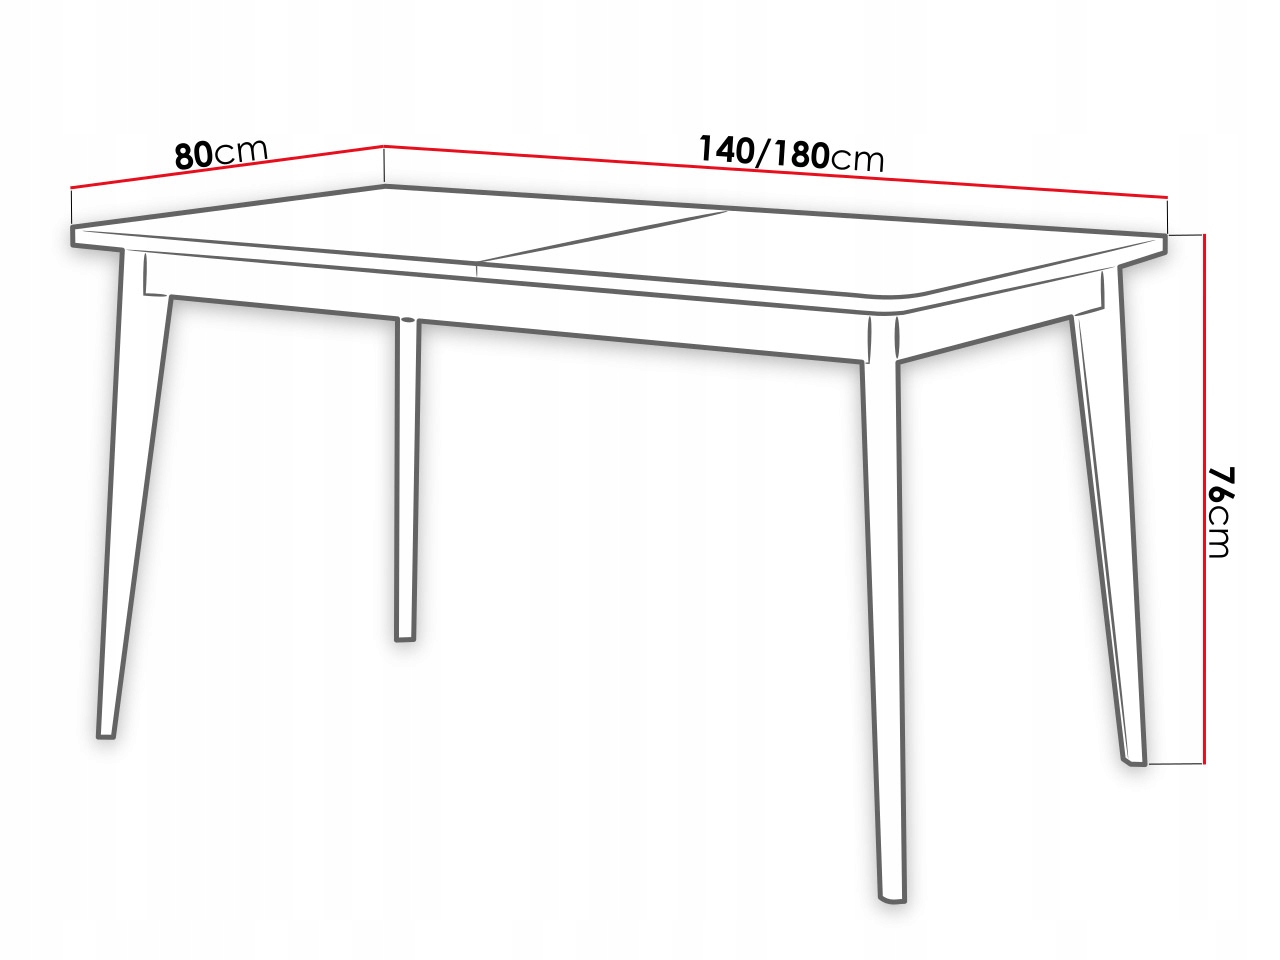 высота столешницы обеденного стола